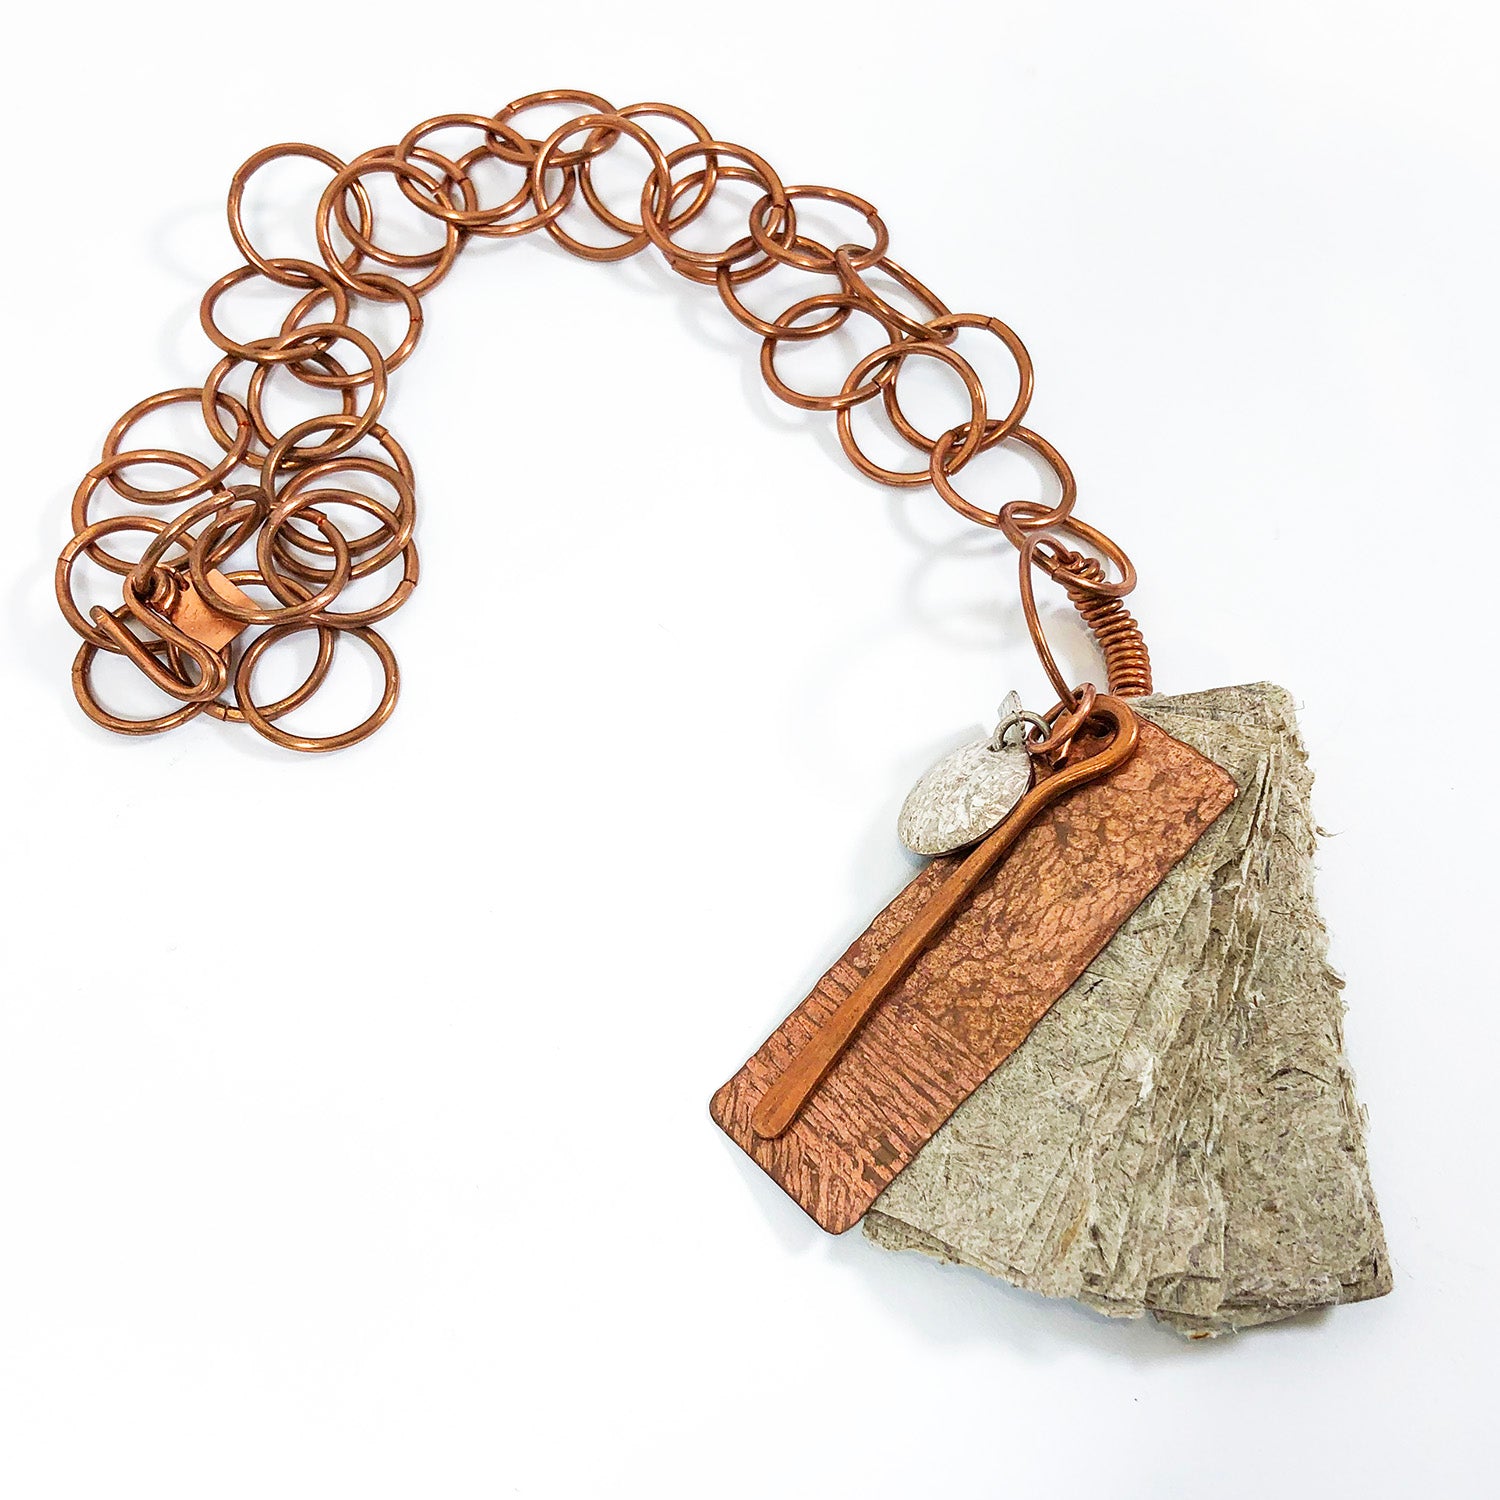 Copper Booklet Pendant Necklace